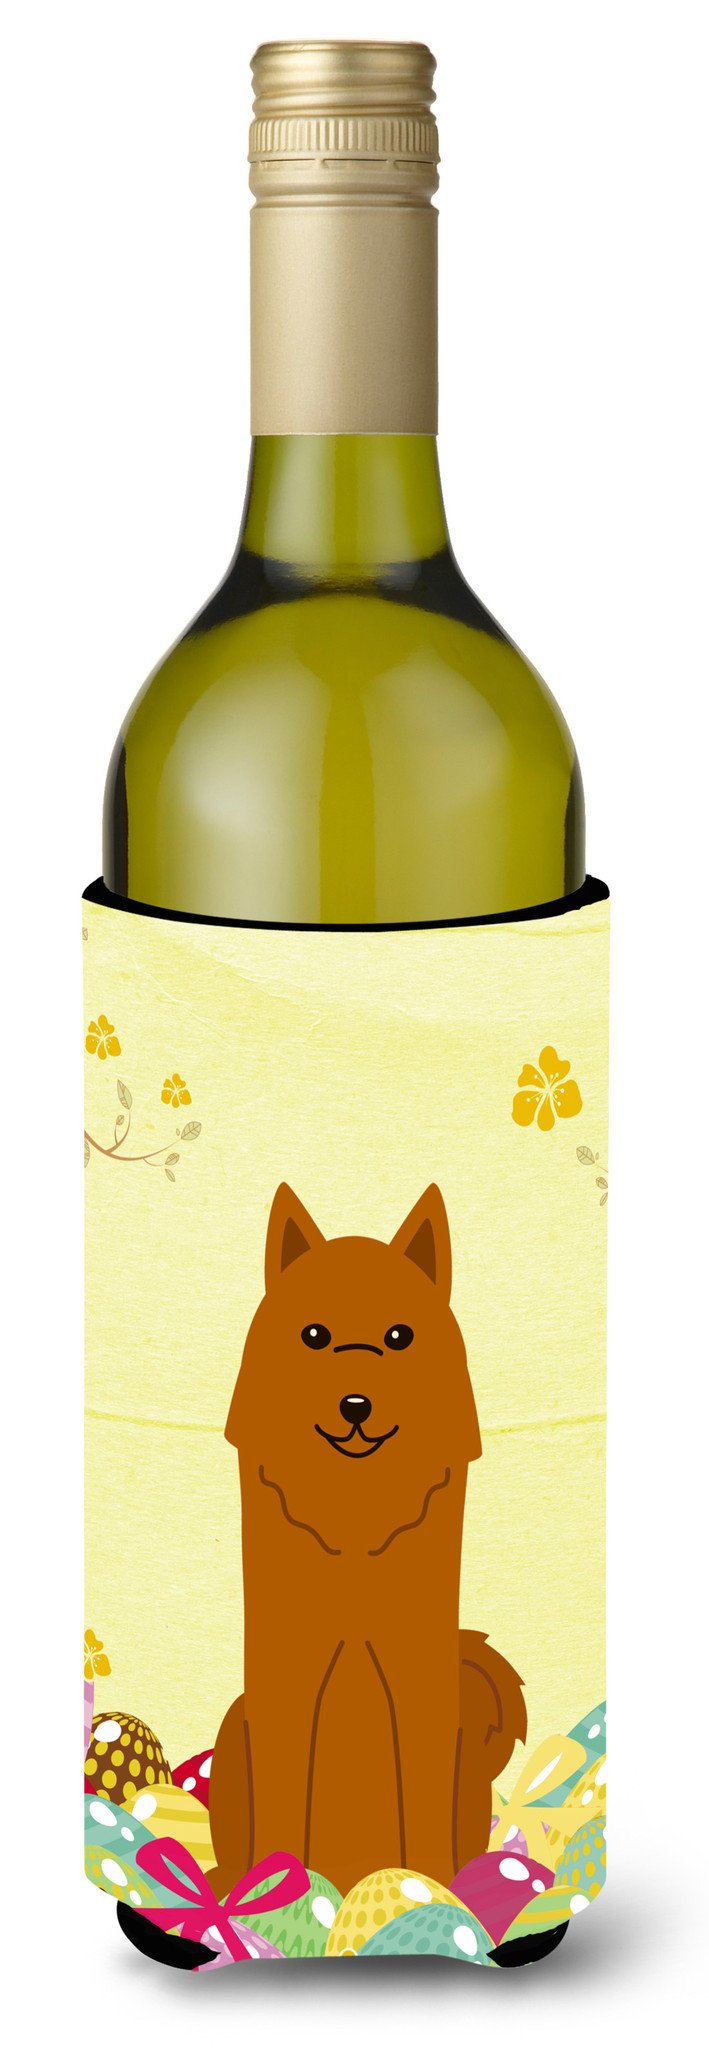 Easter Eggs Karelian Bear Dog Wine Bottle Beverge Insulator Hugger BB6022LITERK by Caroline's Treasures